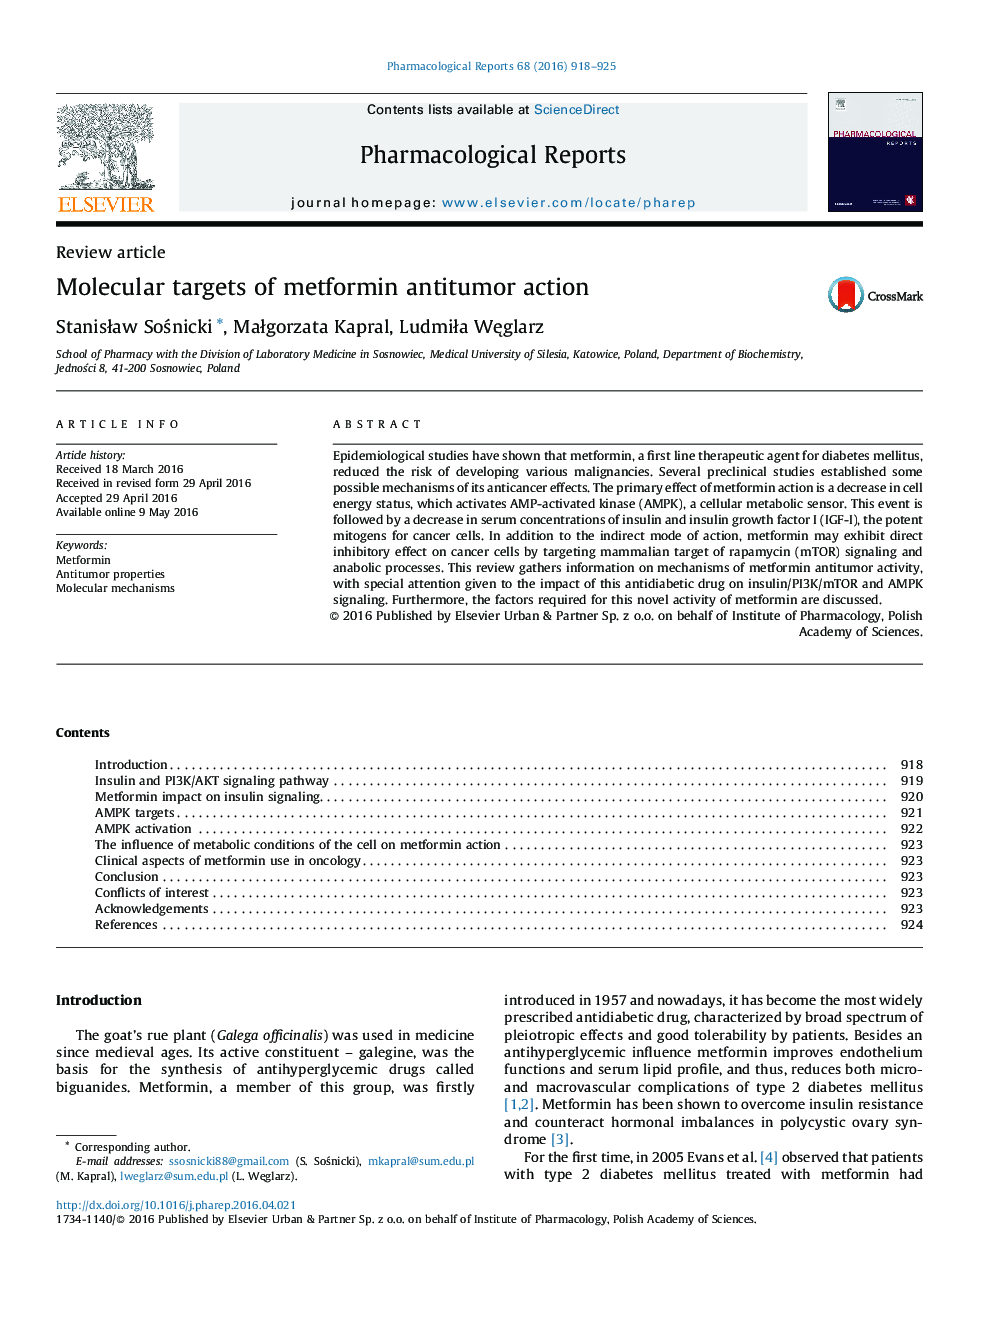 Molecular targets of metformin antitumor action